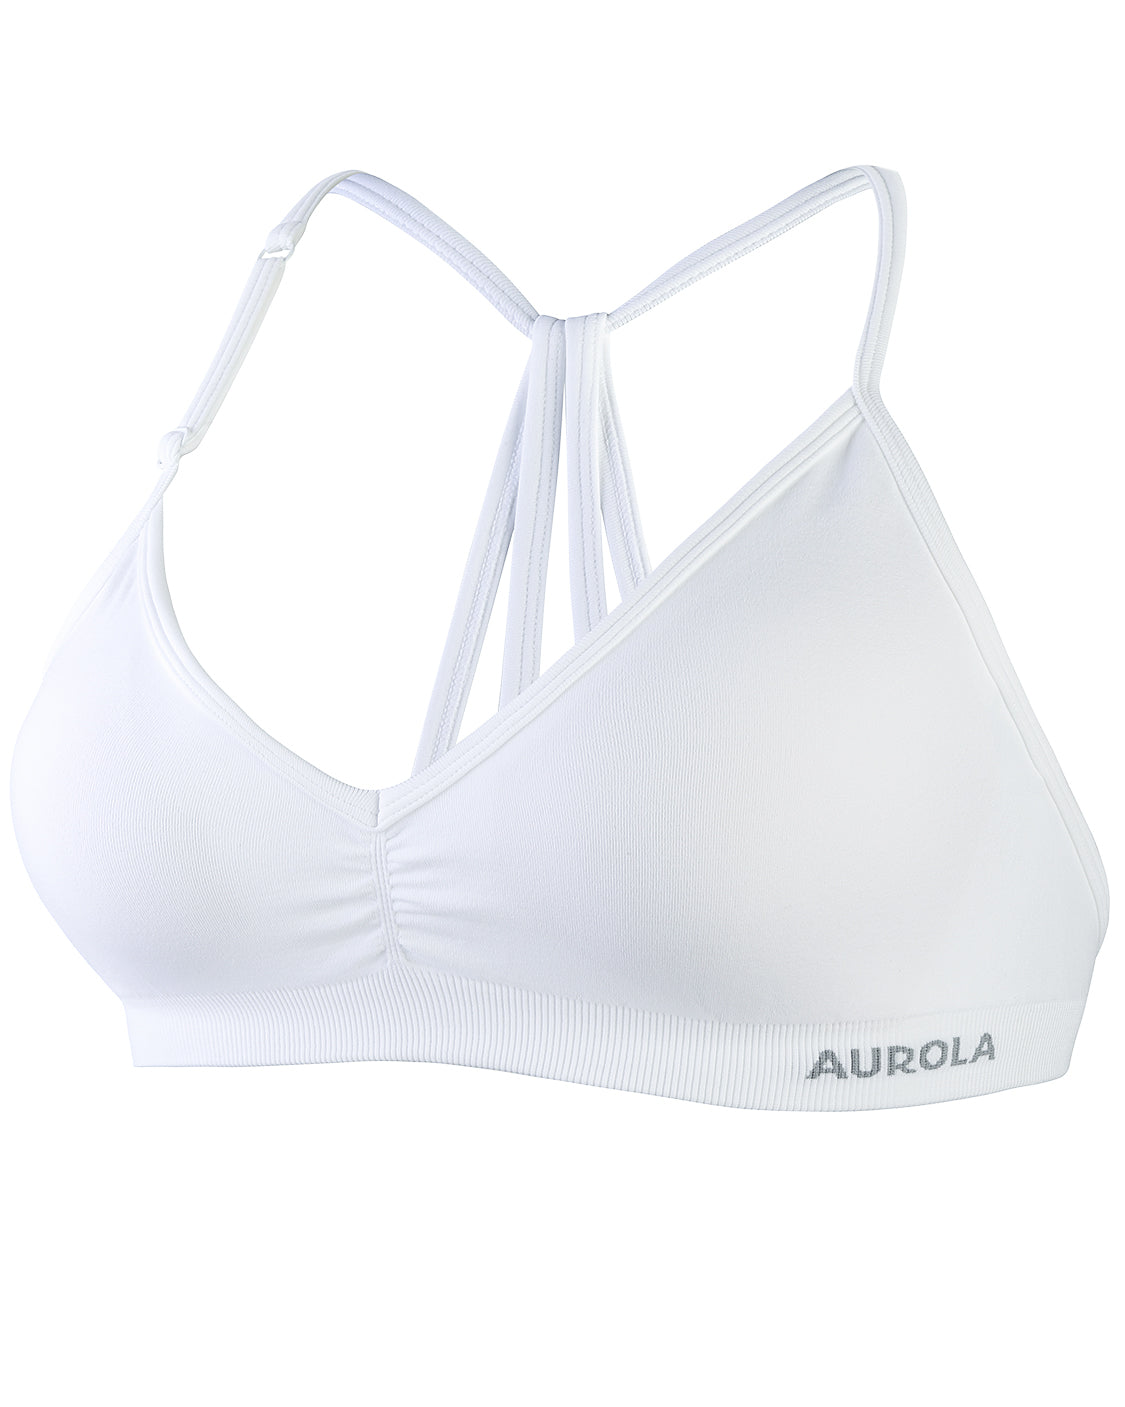 AUROLA Seamless Adjustable Mercury Sport Bra